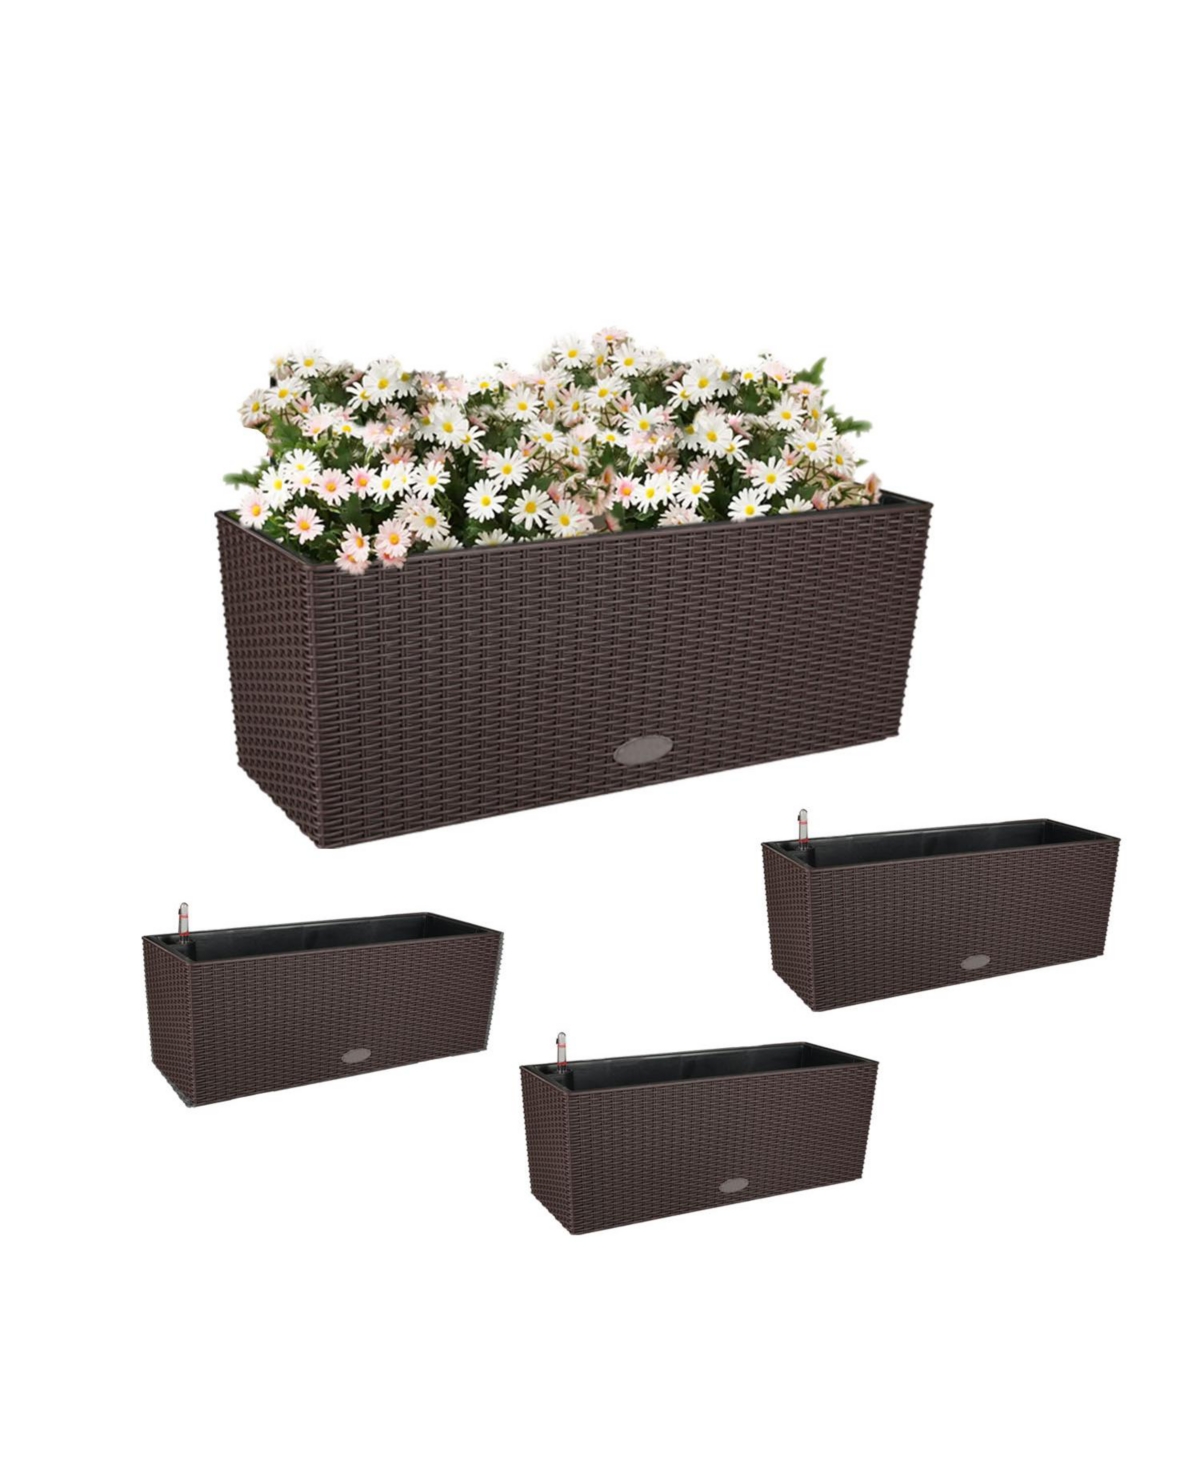 Mahliya Planter Box (Set of 4) - Brown